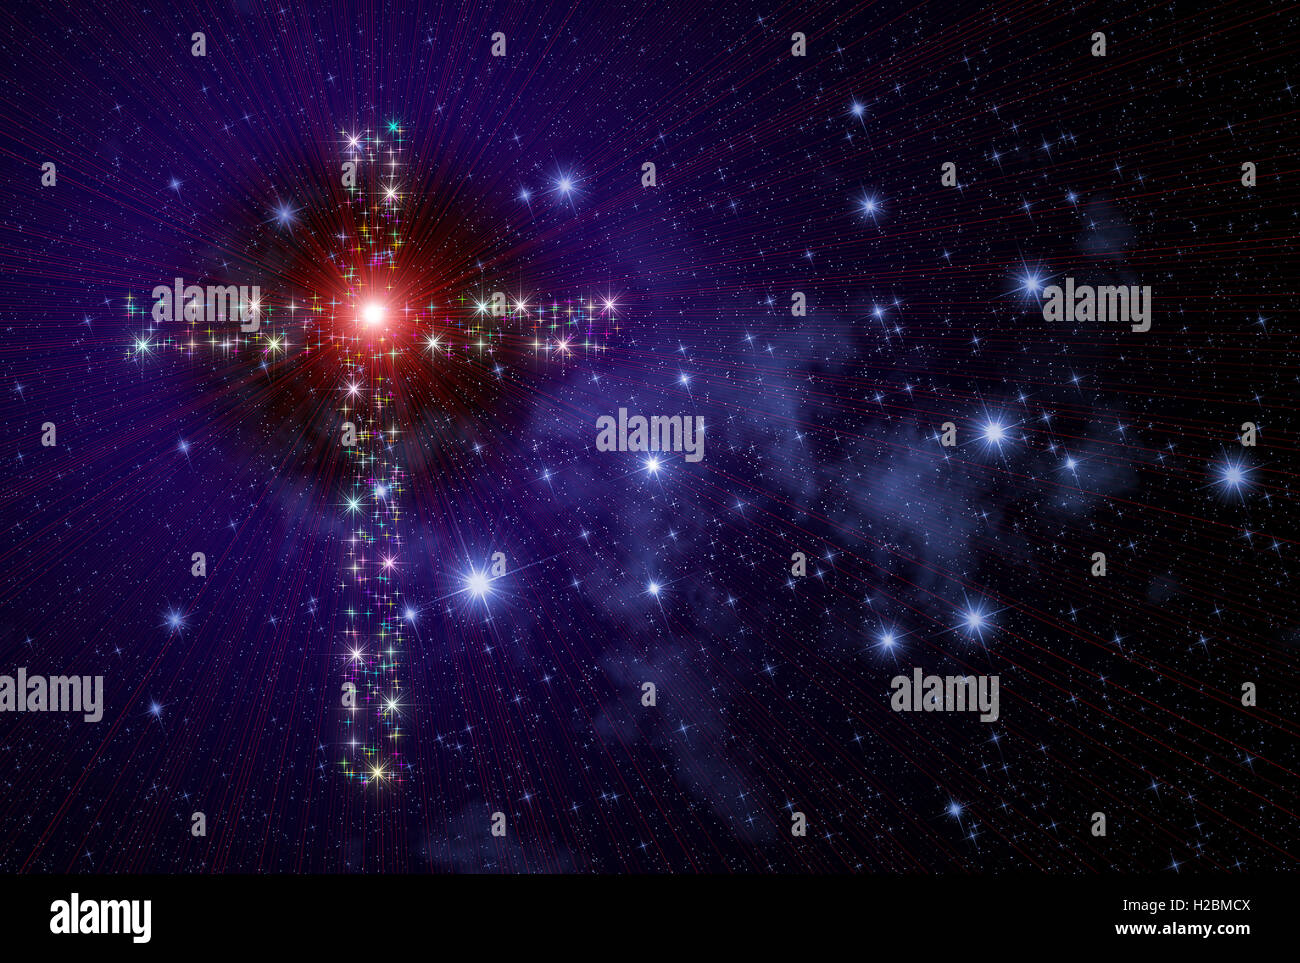 Abbildung, die ein Christentum-Konzept mit dem Raum überfüllt von funkelten funkelnden Sternen und Nebeln und Christian Kreuz zeigt Stockfoto